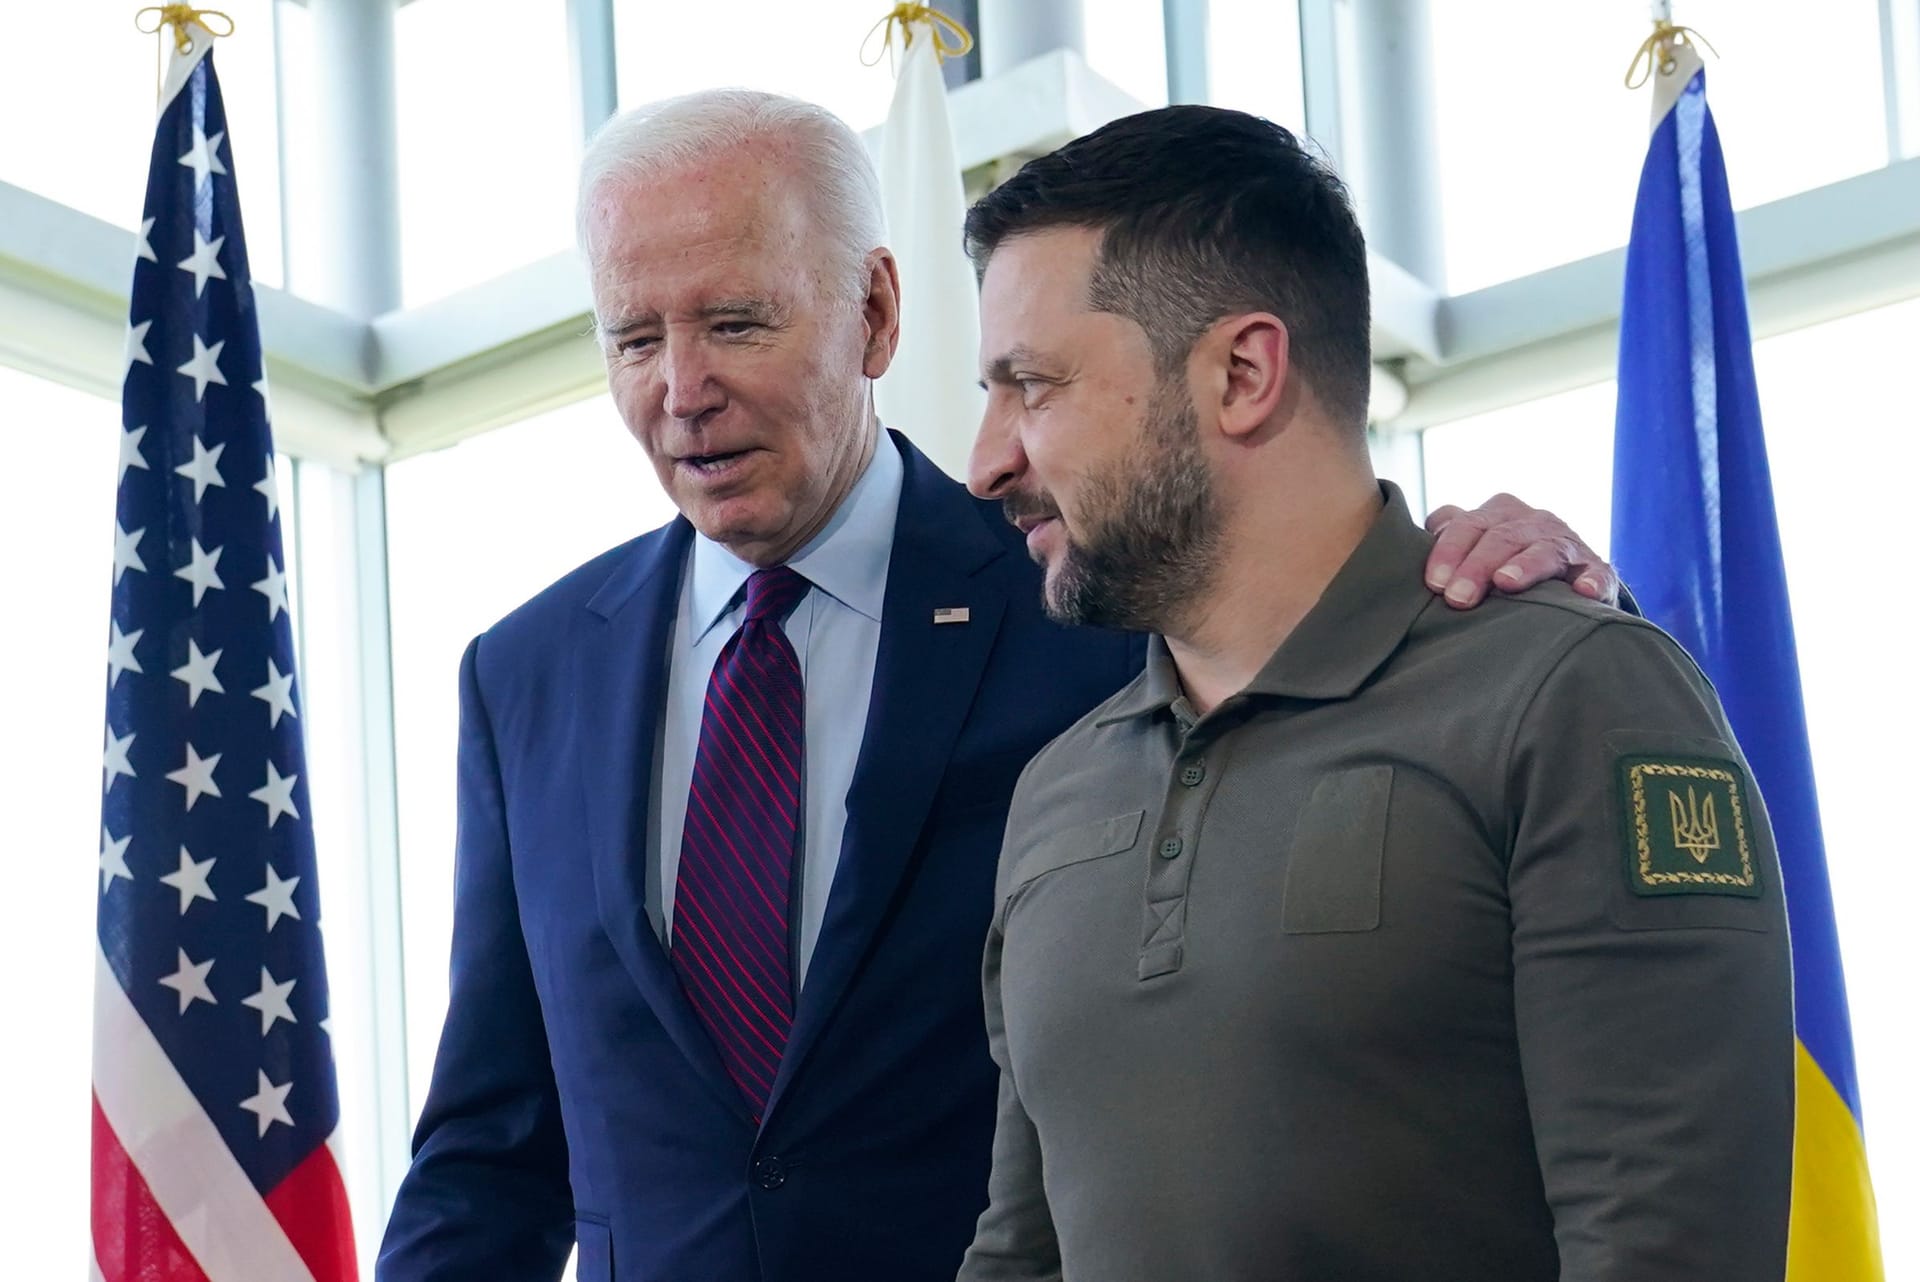 Ein ähnliches Bild wie hier beim G7-Gipfel könnte es bald wieder geben: Der ukrainische Präsident Wolodymyr Selenskyj (r.) will nach seiner Rede bei der Generalversammlung der Vereinten Nationen US-Präsident Joe Biden in Washington treffen.